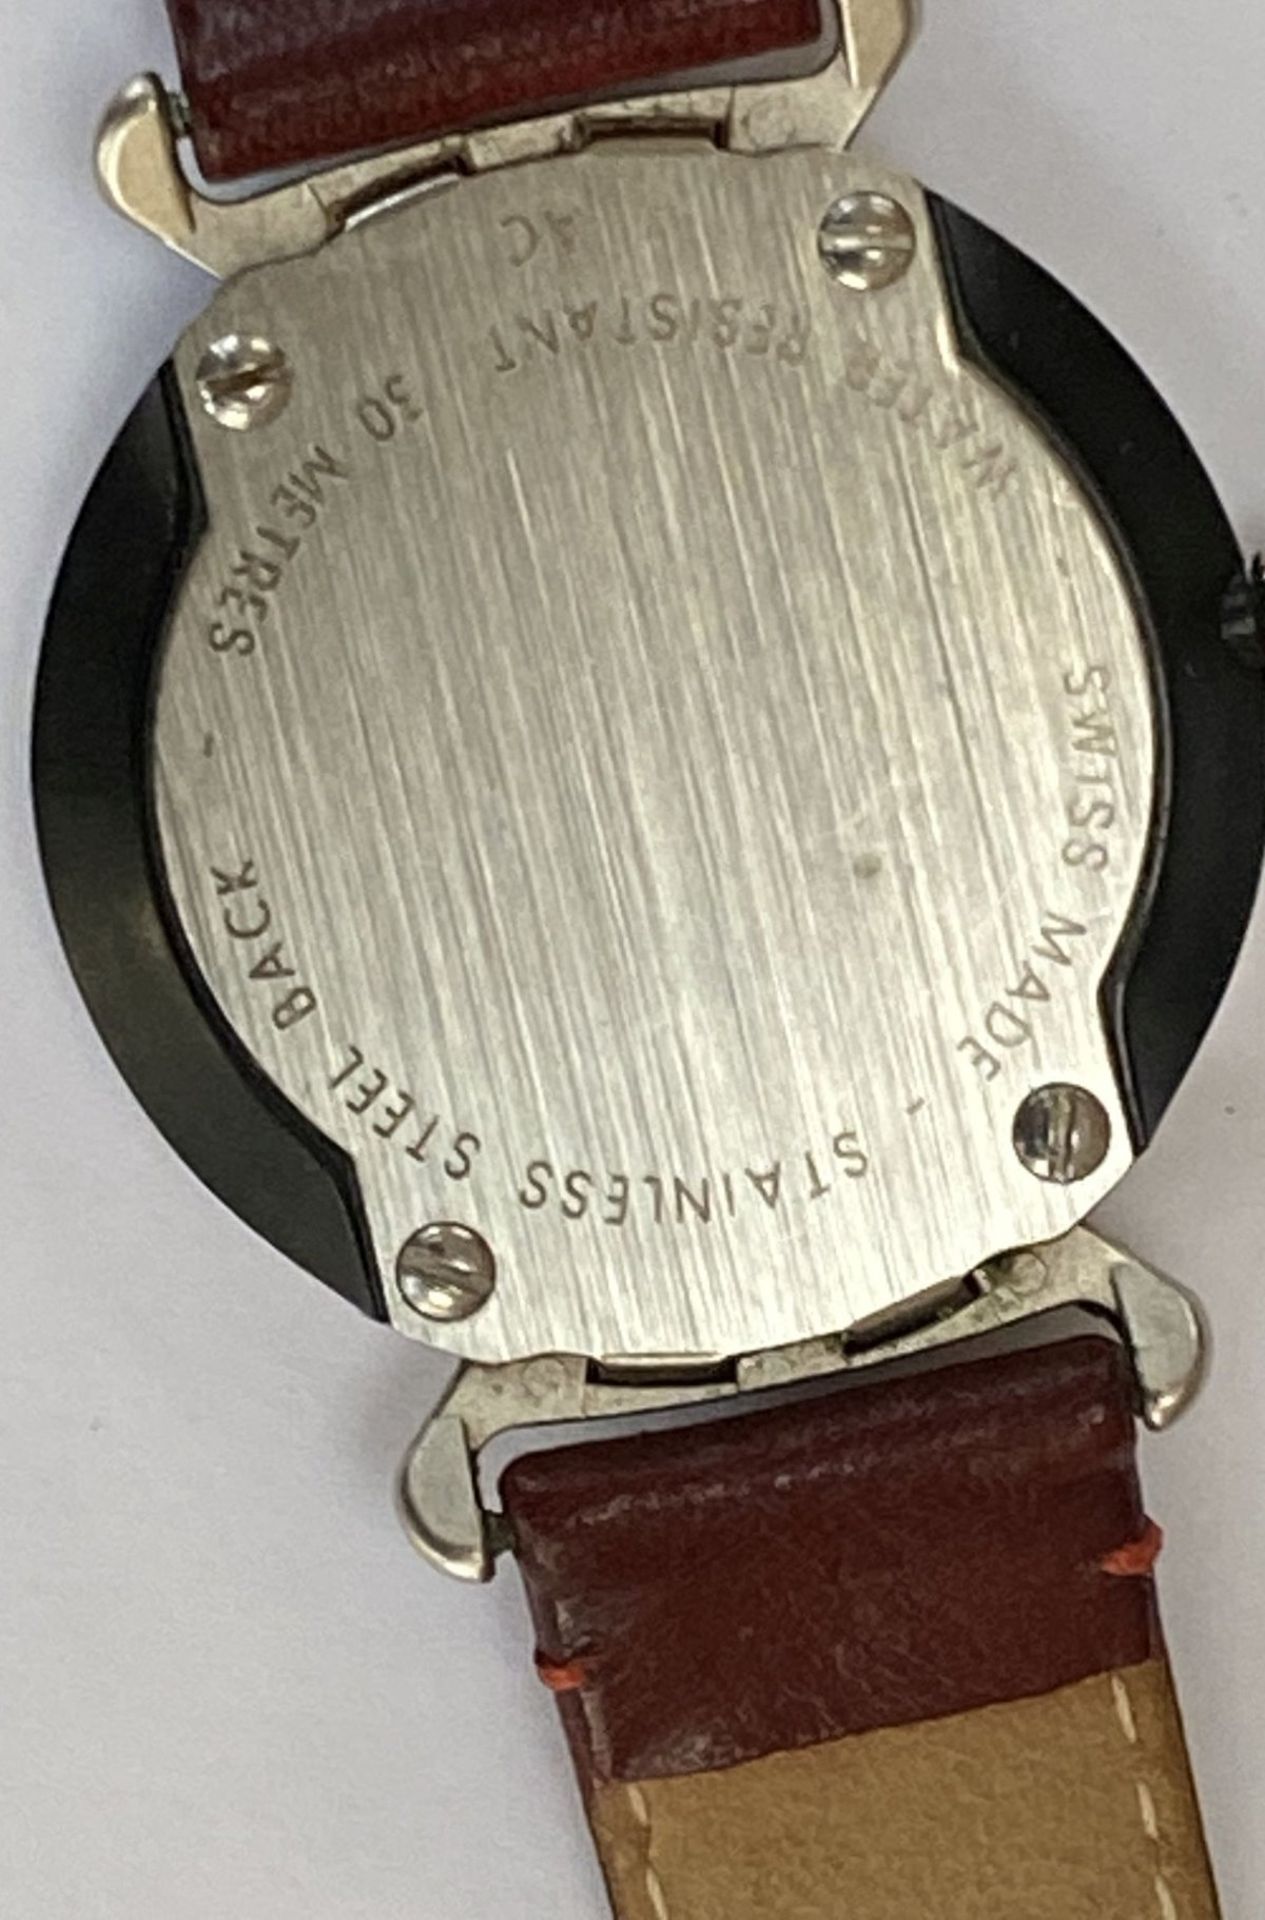 Schweizer Armbanduhr, Quarz, kein Hersteller?, nur Schweizer Kreuz, Werk läuft, gut erhalten, - Image 4 of 5